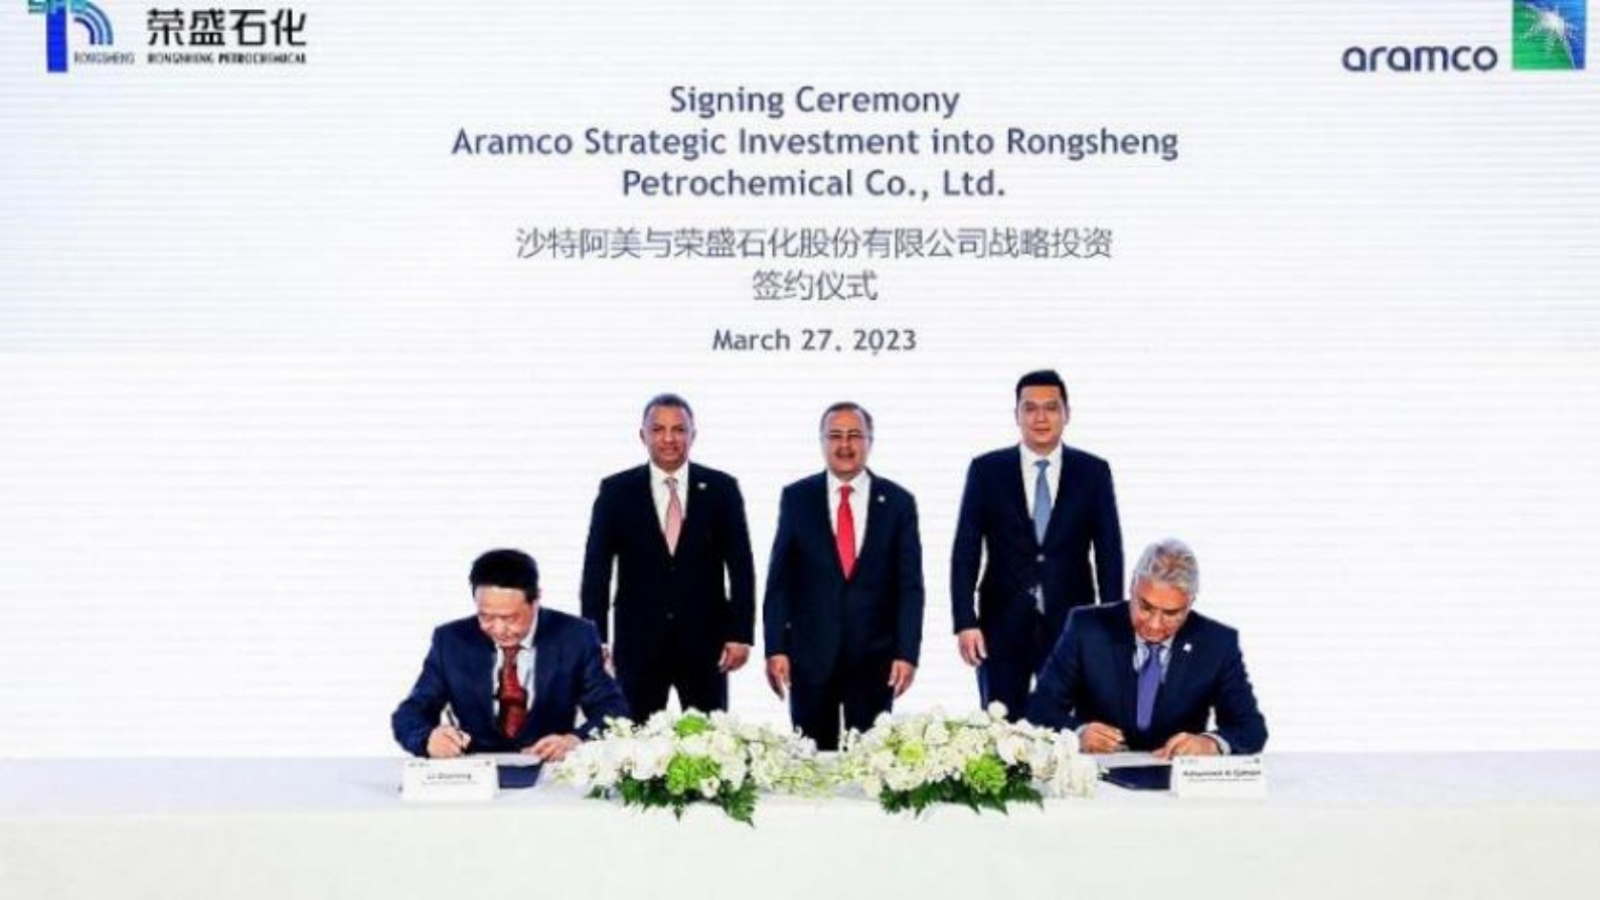 الإعلان يؤكد التزام أرامكو السعودية طويل الأجل تجاه الصين وإيمانها بقوة قطاع البتروكيميائيات الصيني (واس)